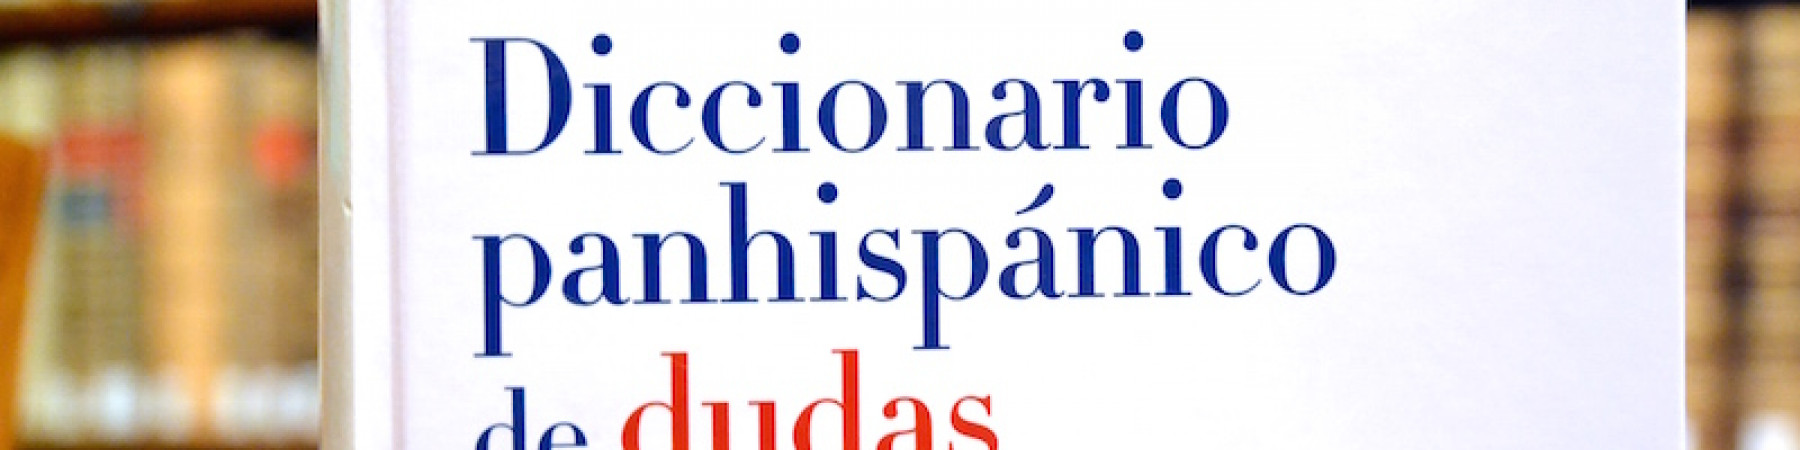 Diccionario Panhispánico del Español Jurídico – Centro Cultural